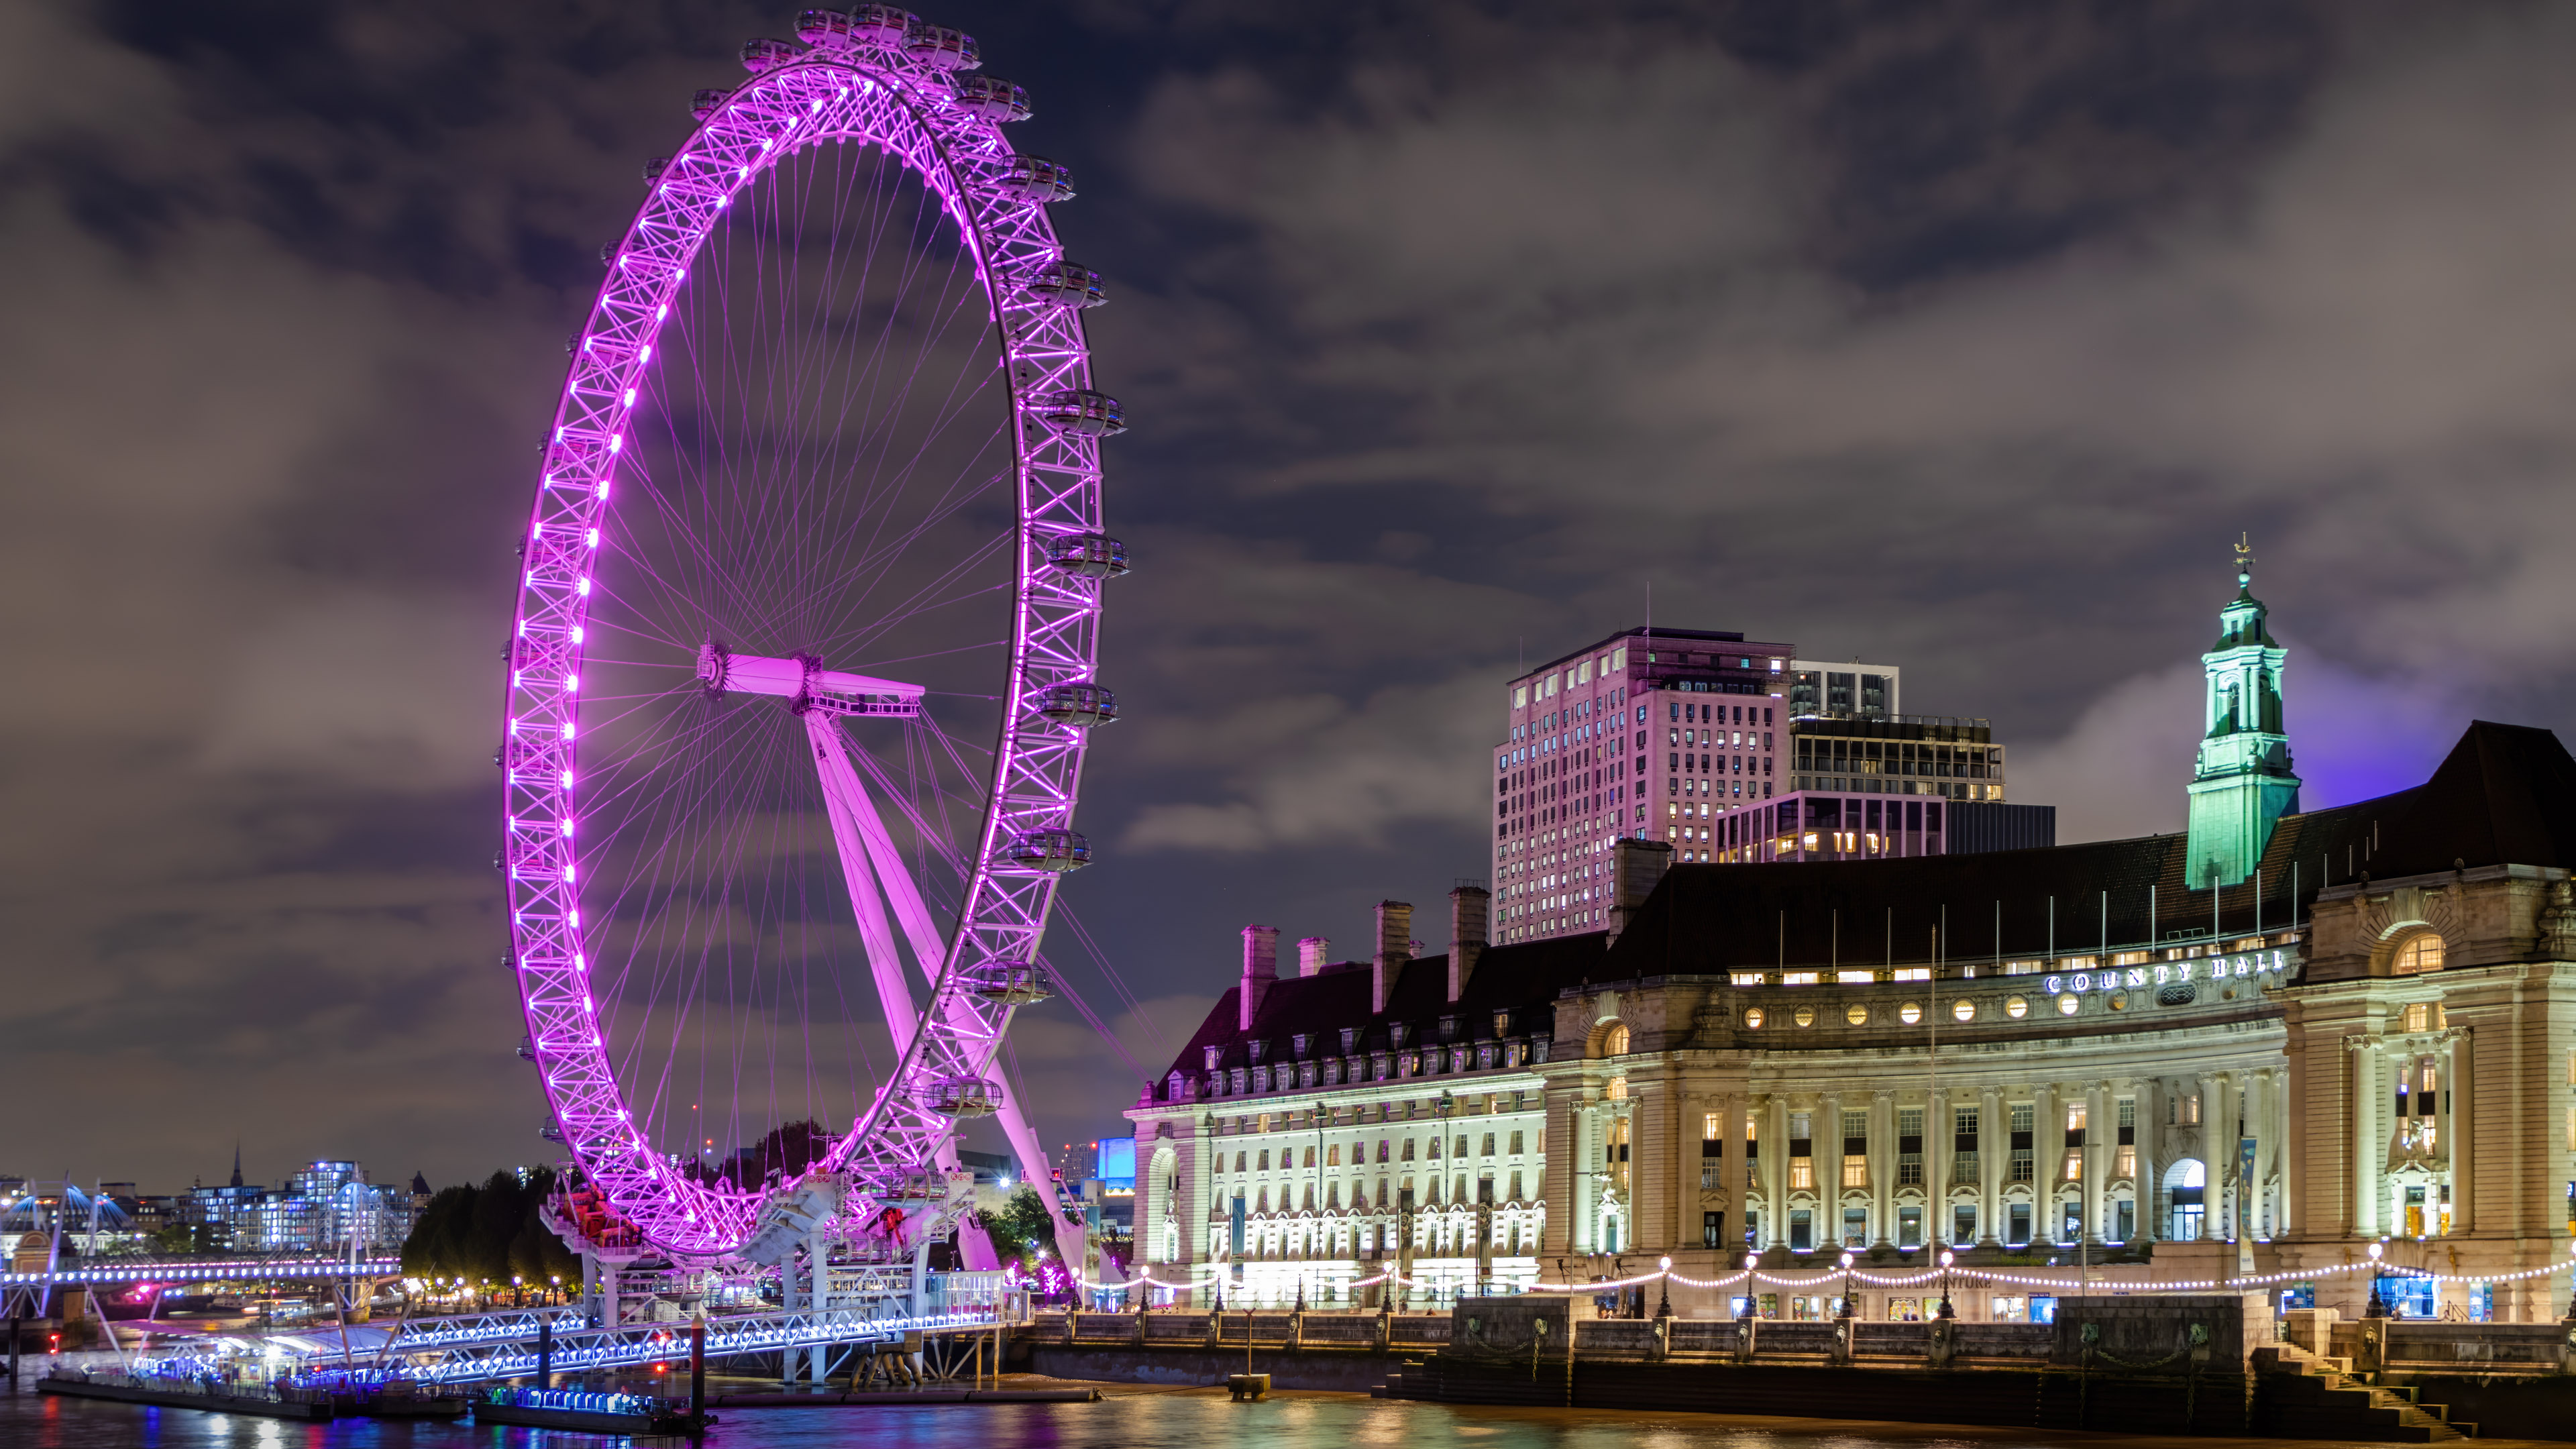 Vivez la magie de Londres la nuit avec notre fond d’écran 4K mettant en vedette le London Eye, illuminant votre écran avec l’horizon emblématique de la ville. 